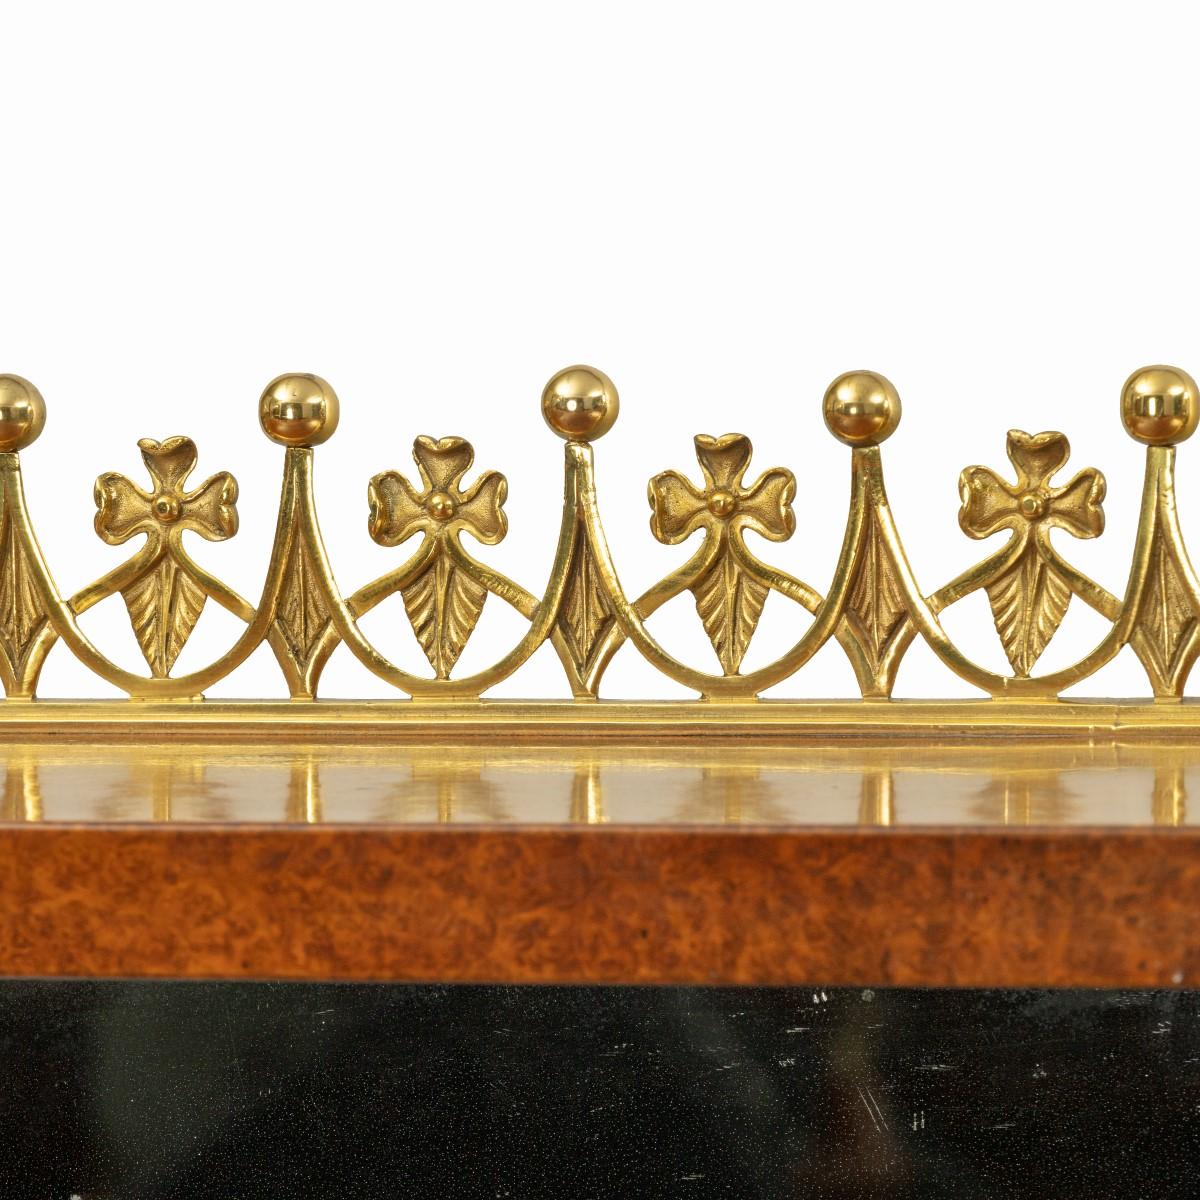 Un meuble d'appoint en amboine de la fin de la Régence, à base rectangulaire avec deux armoires vitrées élancées, flanquées de colonnes en ébène avec des montures en bronze doré, de part et d'autre d'une plinthe centrale à fond de miroir, le plateau